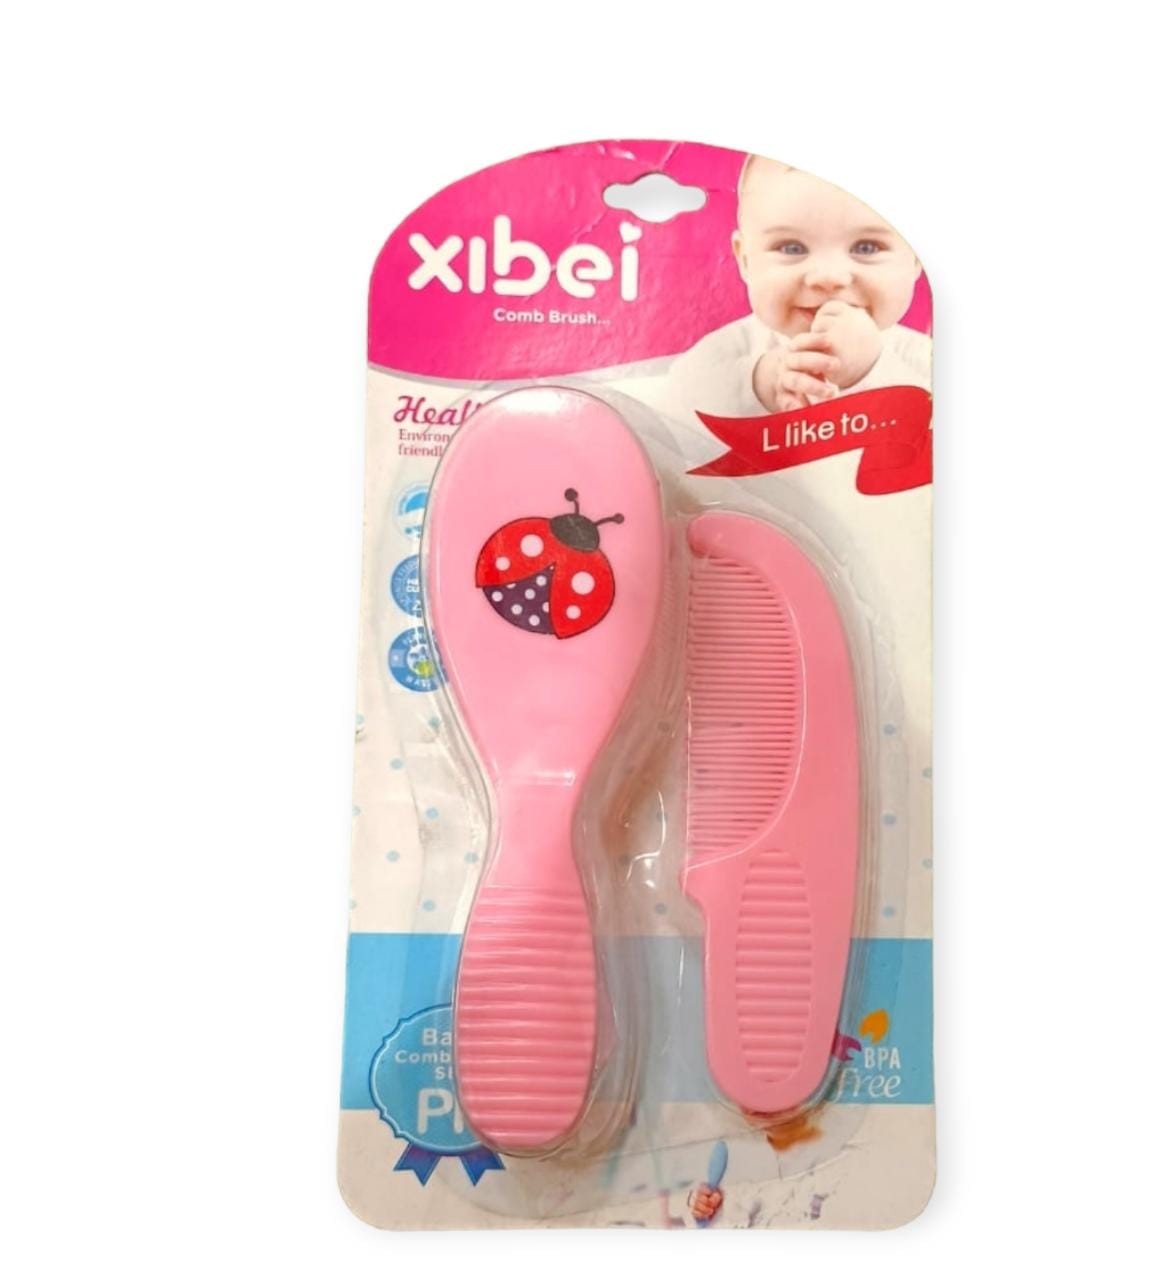 Xibei comb brush 